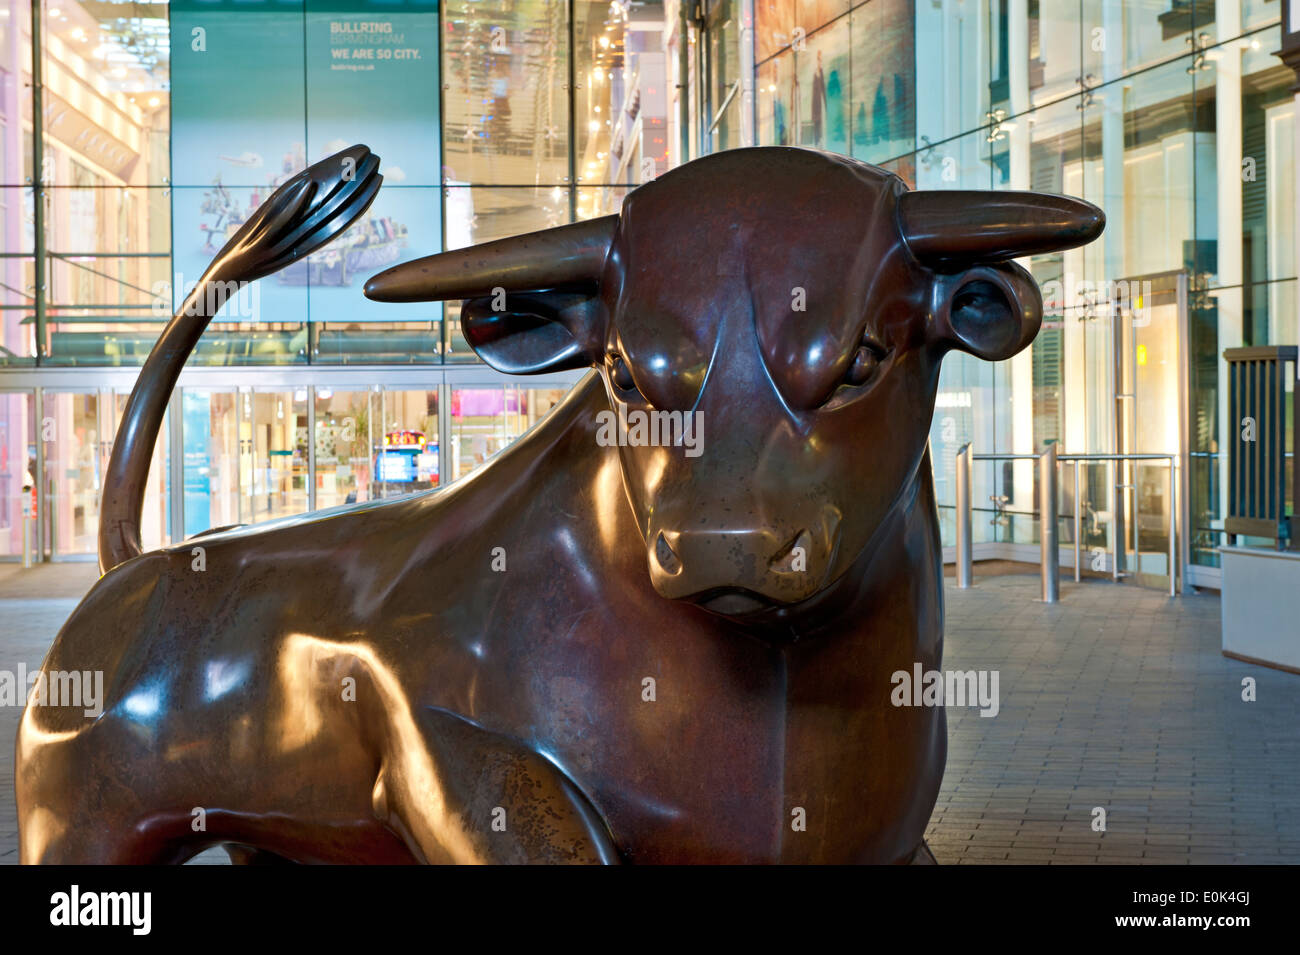 Escultura de bronce de un toro, el centro comercial Bullring, Birmingham, West Midlands, Inglaterra, Reino Unido. Foto de stock